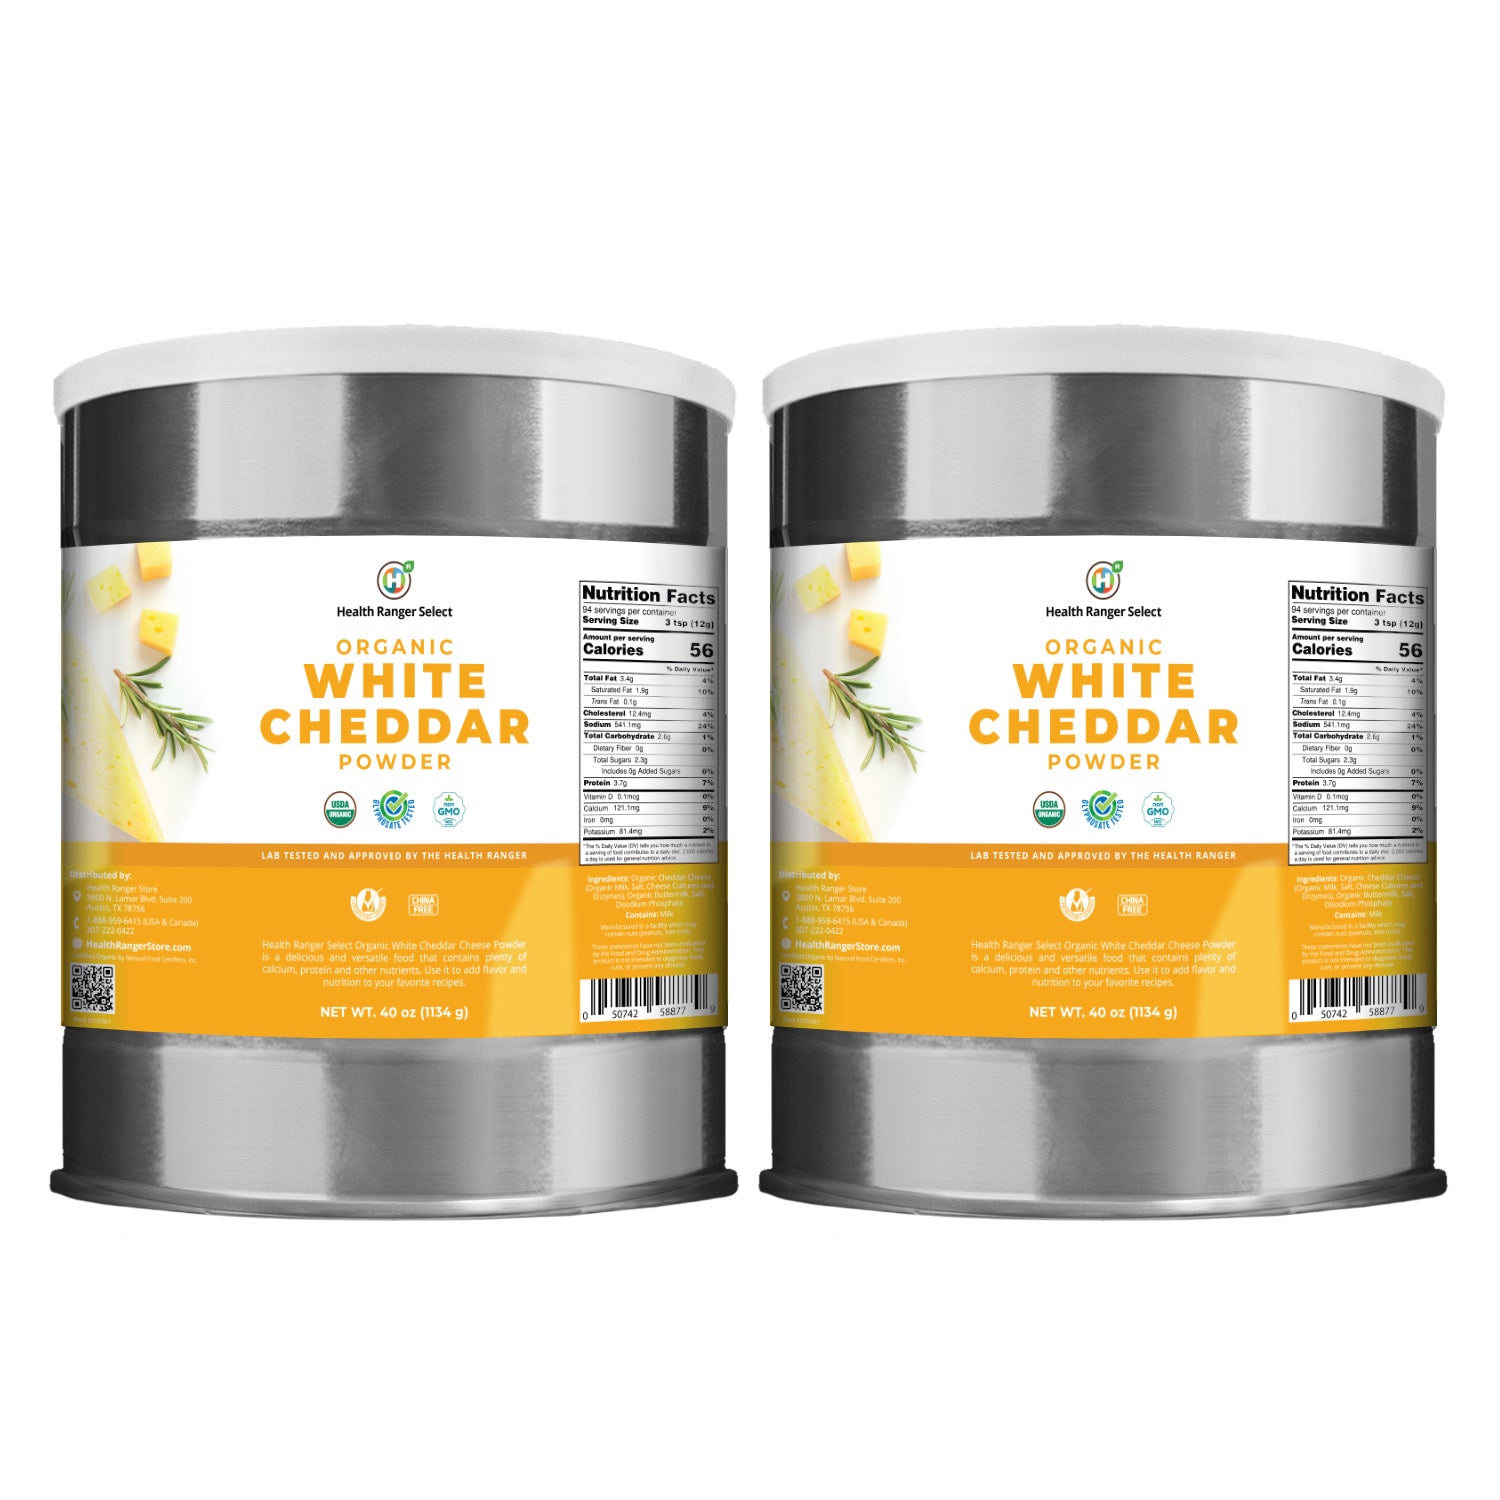 Organic White Cheddar Powder (40 oz, 1134g) 